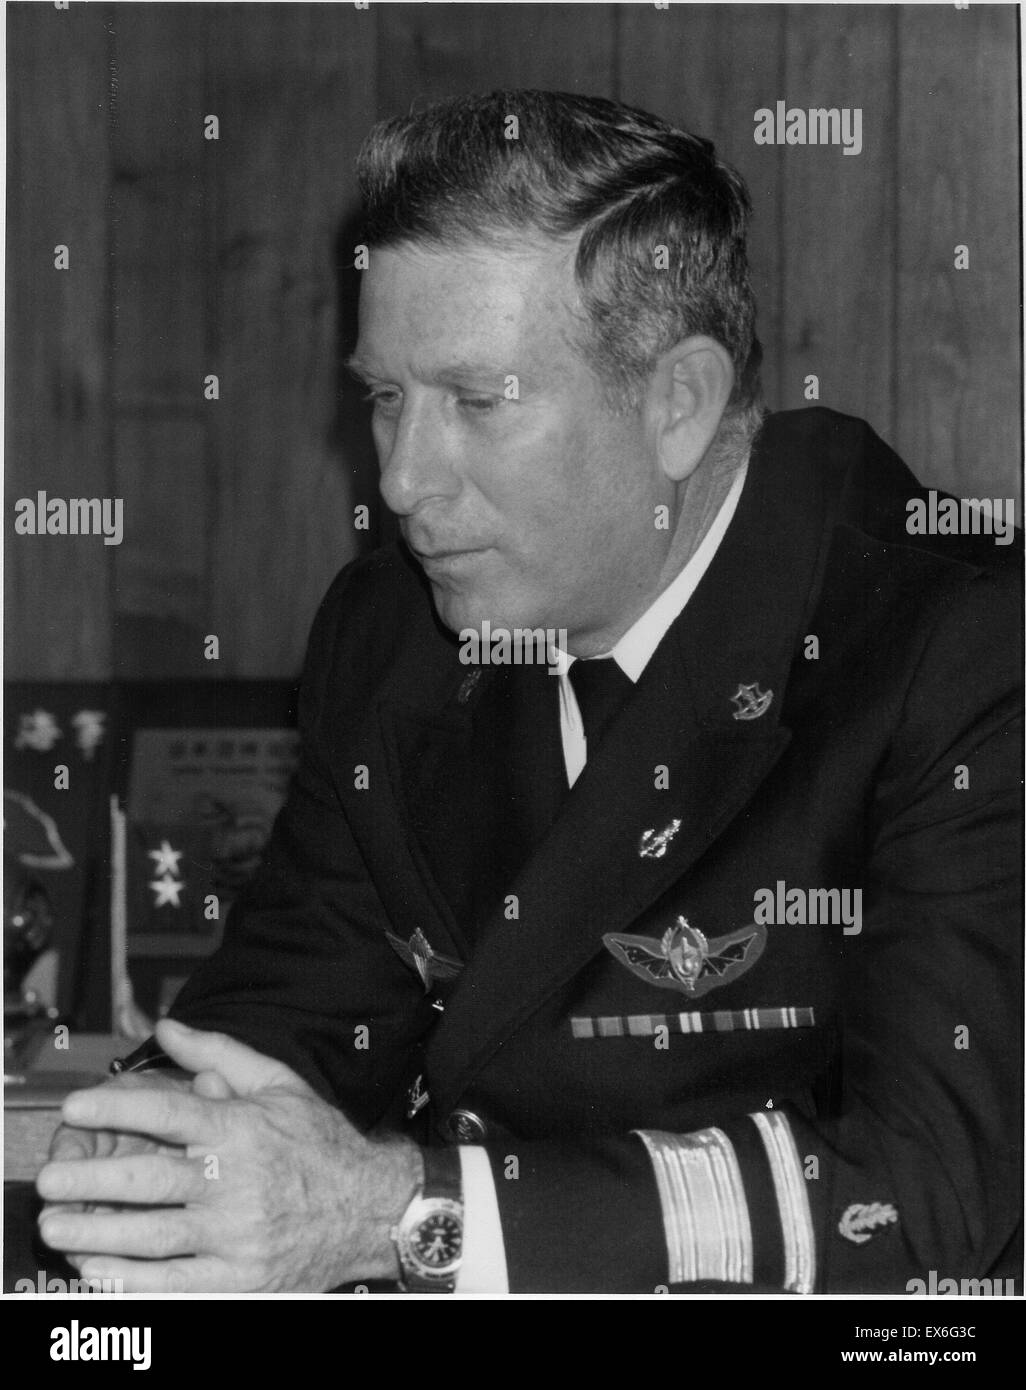 Zeev Almog (1935-1995)., war der Oberbefehlshaber (C.I.C) der israelischen Marine von 1979 bis 1985. Auch war er General Manager der Israel Werften von 1986 bis 1995. Stockfoto